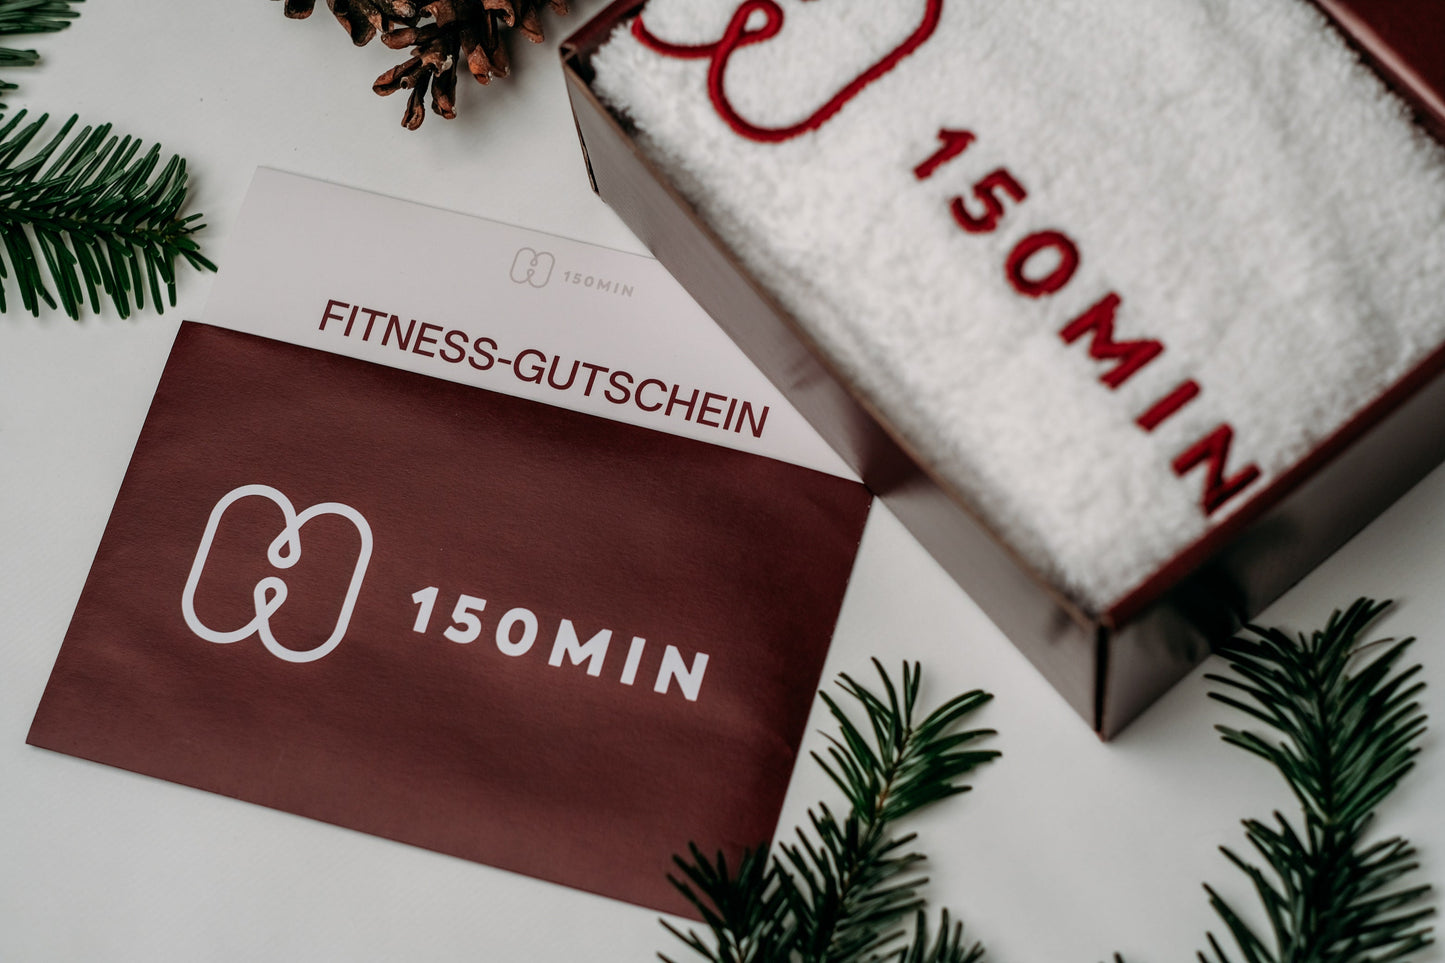 Der 150 Minuten Fitness-Gutschein in attraktiver Geschenkbox mit edlem Handtuch